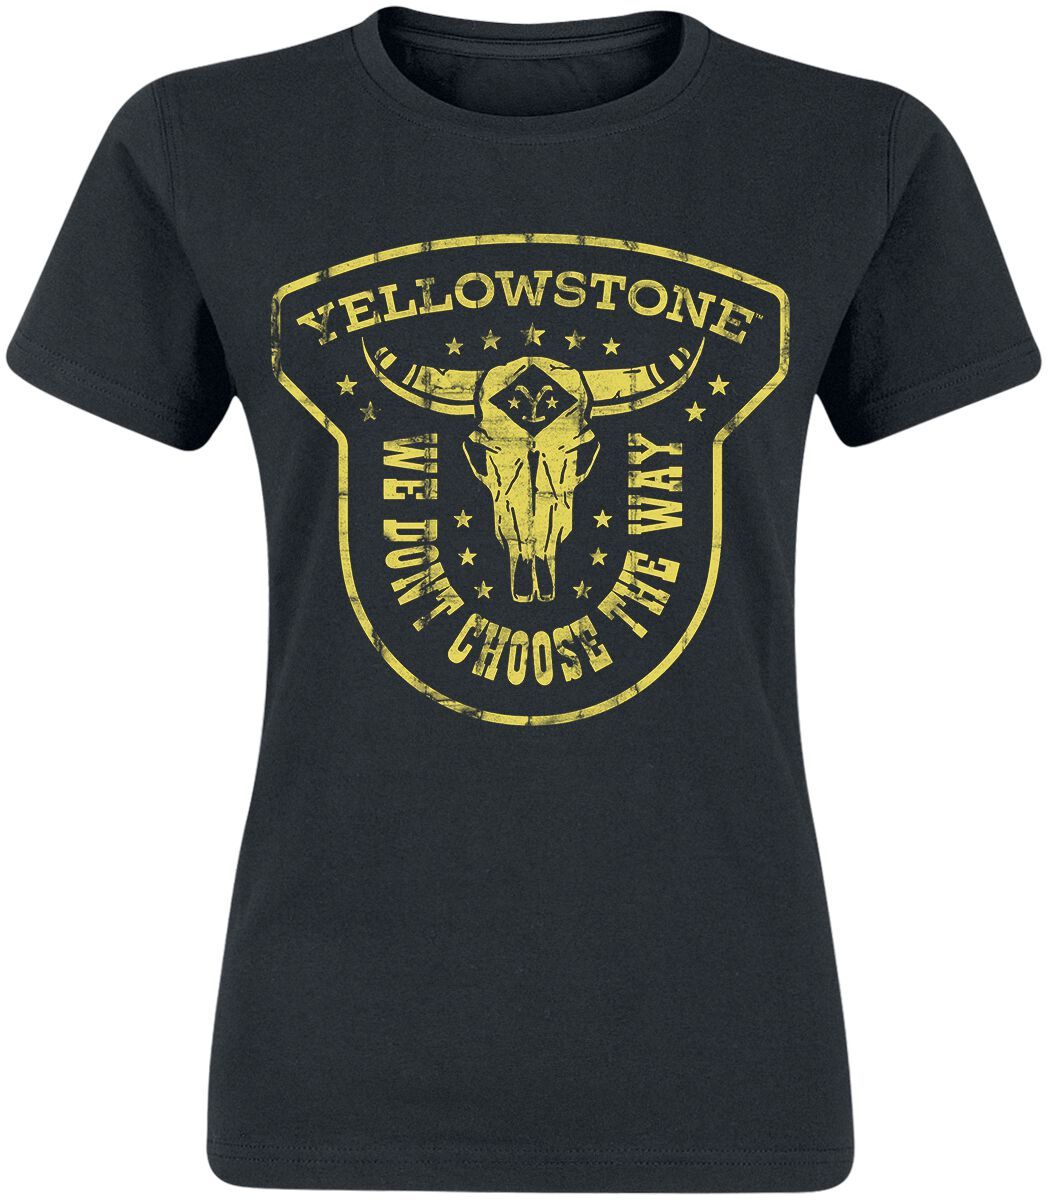 T-Shirt Manches courtes de Yellowstone - We Don't Choose The Way - S à XXL - pour Femme - noir